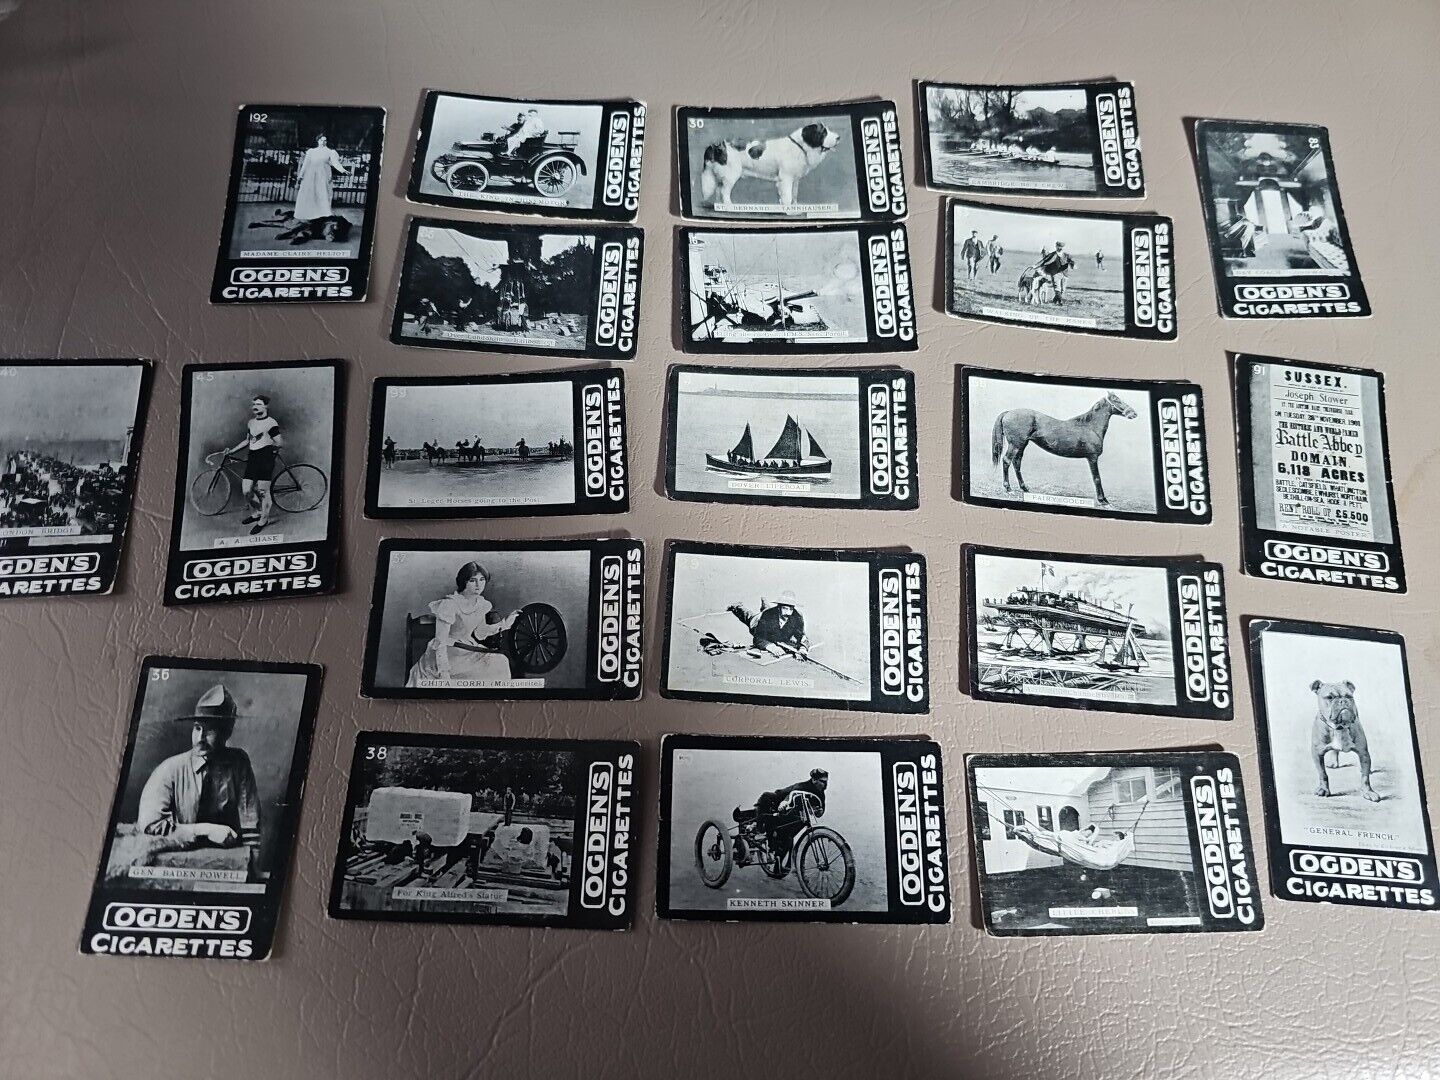 1901 Ogden's Cigarettes Series D General Interest 22 Card Lot